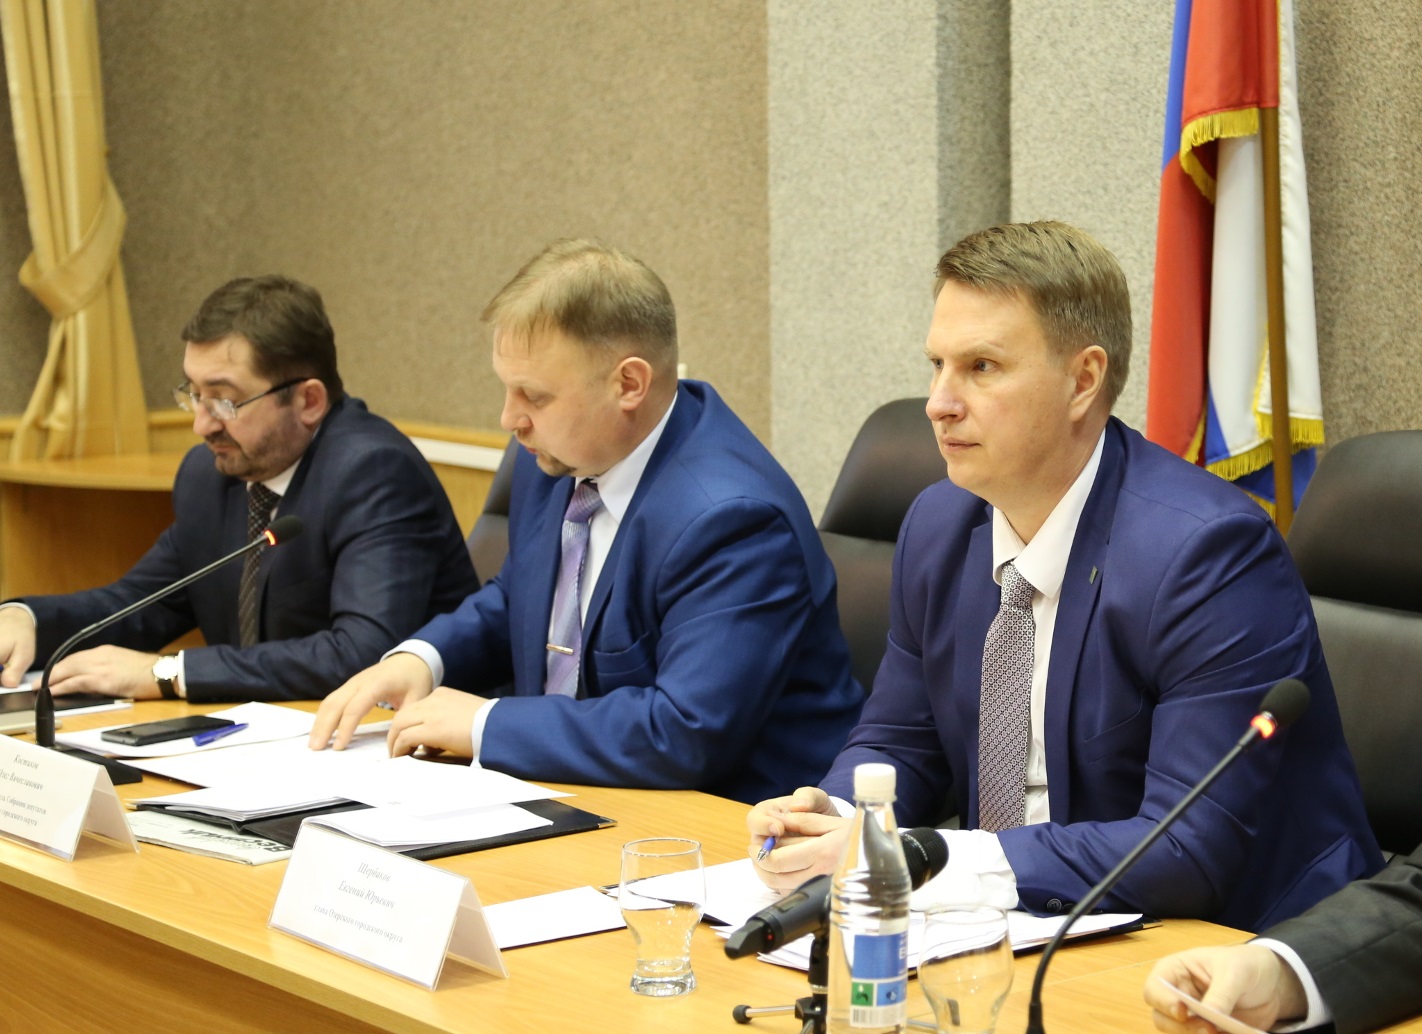 Олег Костиков: «Бюджет принят - будем жить, будем работать»